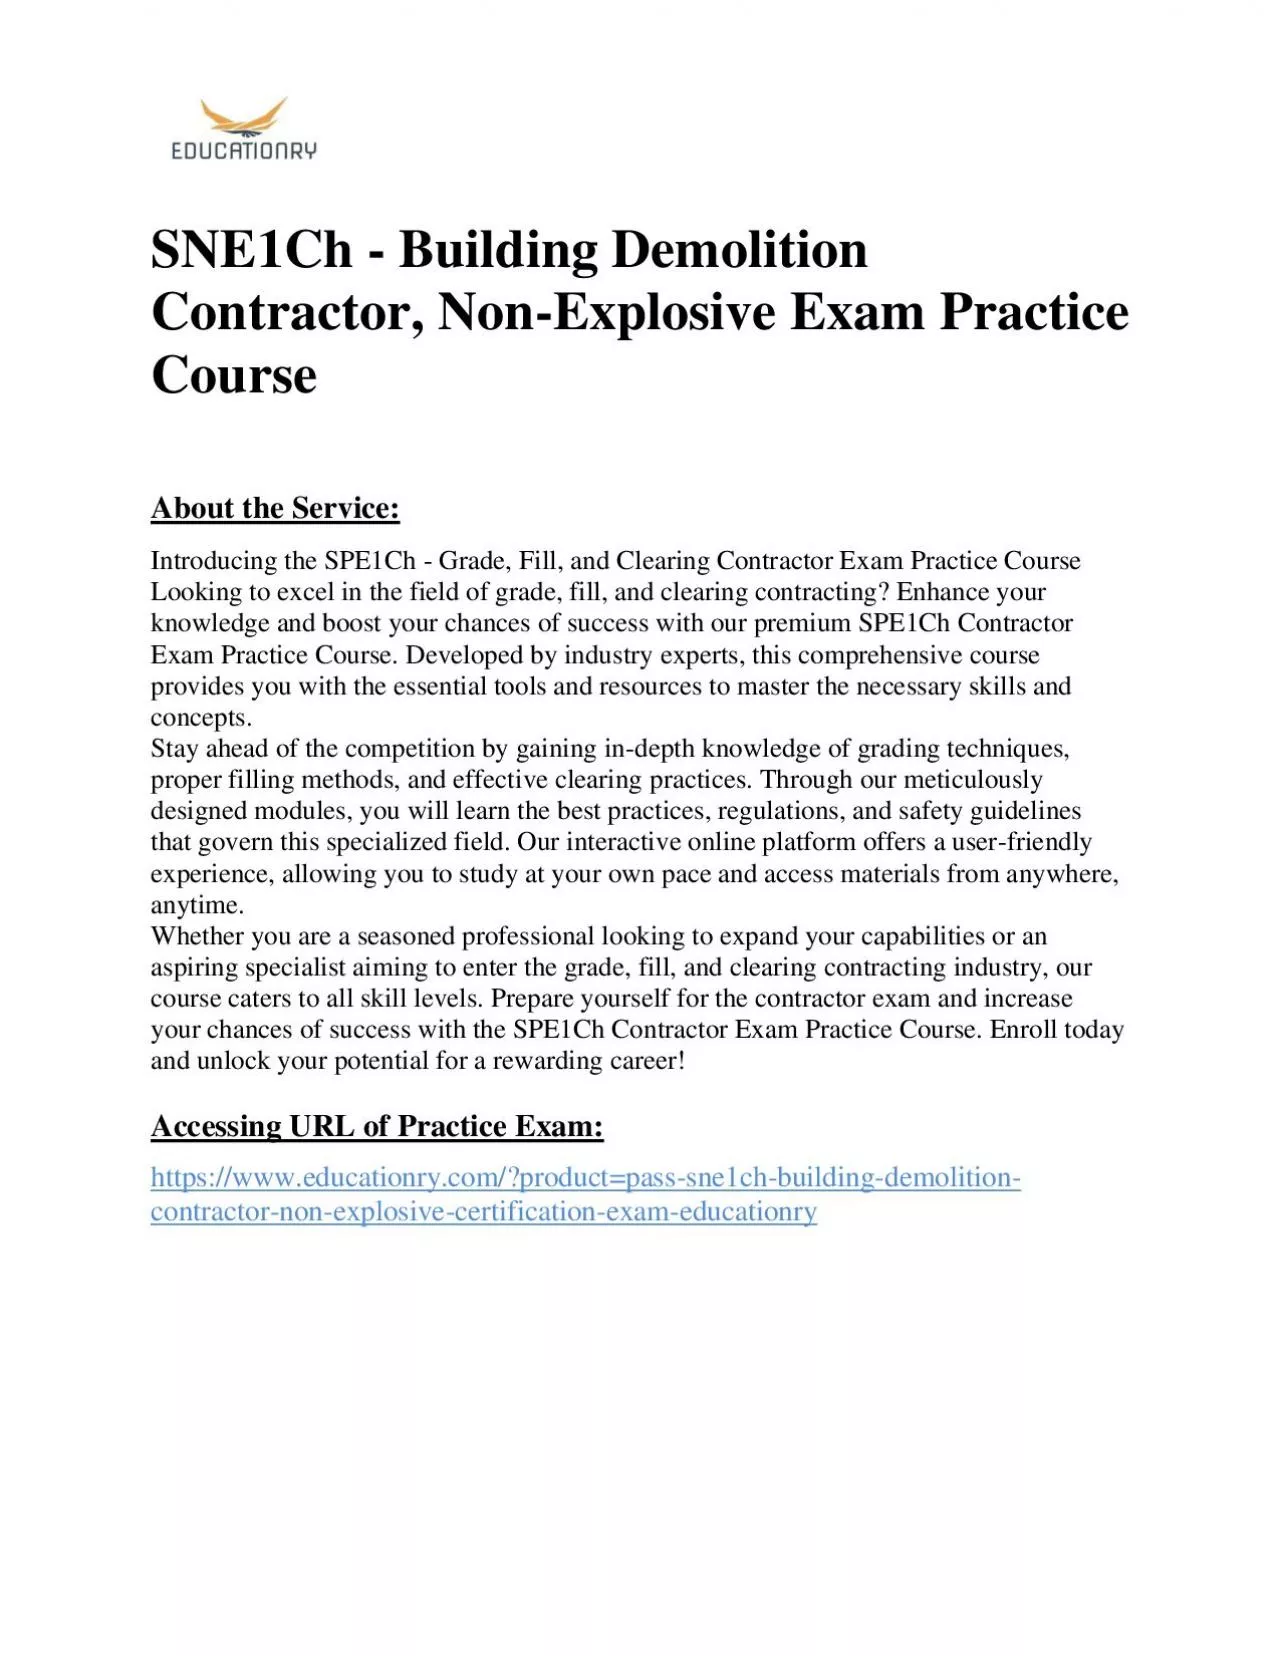 SNE1Ch - Building Demolition Contractor, Non-Explosive Exam Practice Course